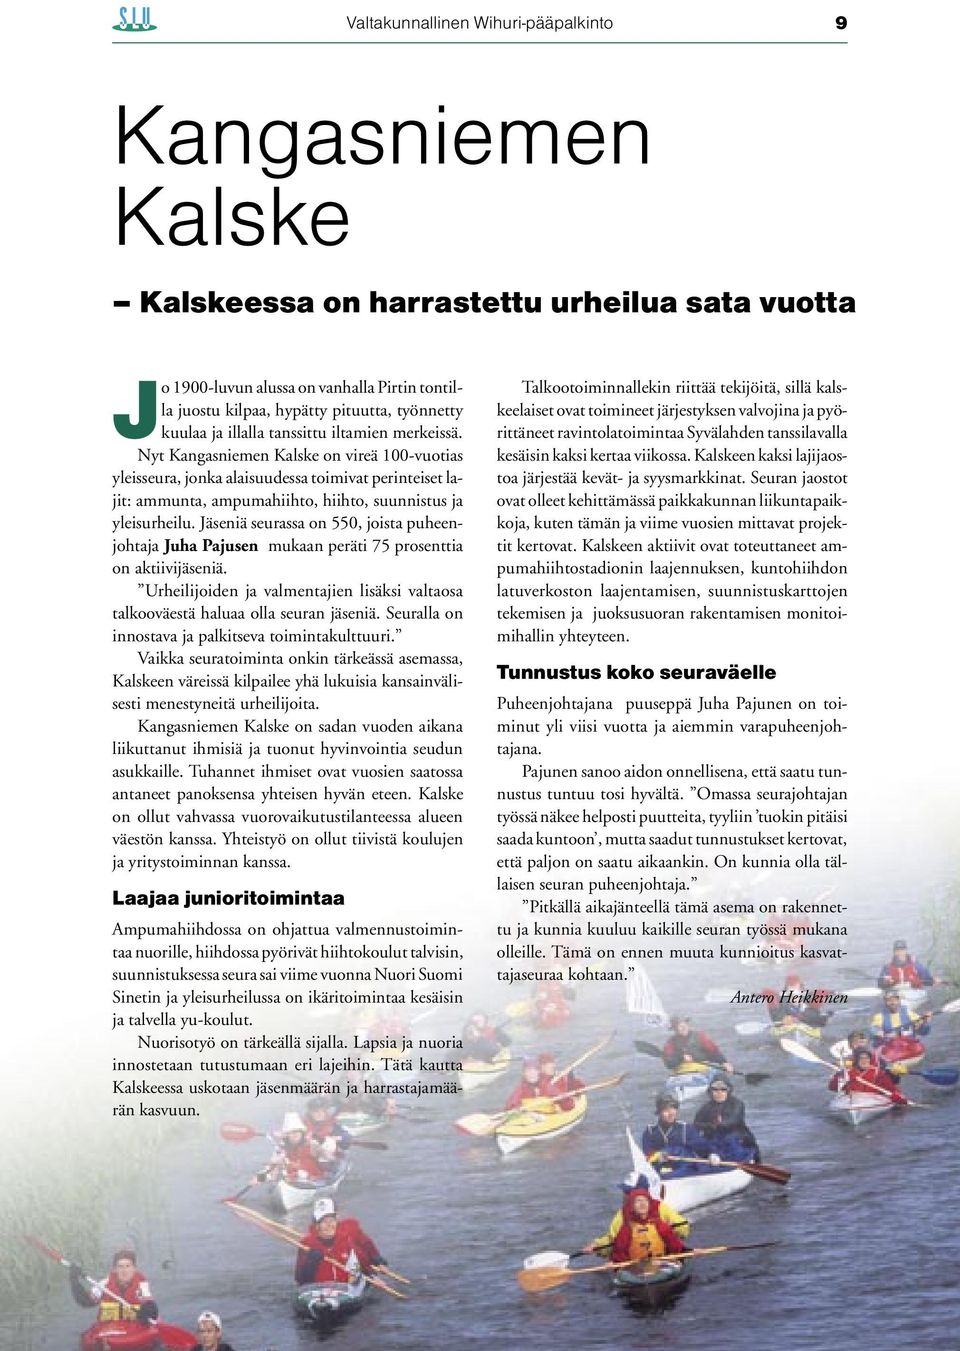 Nyt Kangasniemen Kalske on vireä 100-vuotias yleisseura, jonka alaisuudessa toimivat perinteiset lajit: ammunta, ampumahiihto, hiihto, suunnistus ja yleisurheilu.